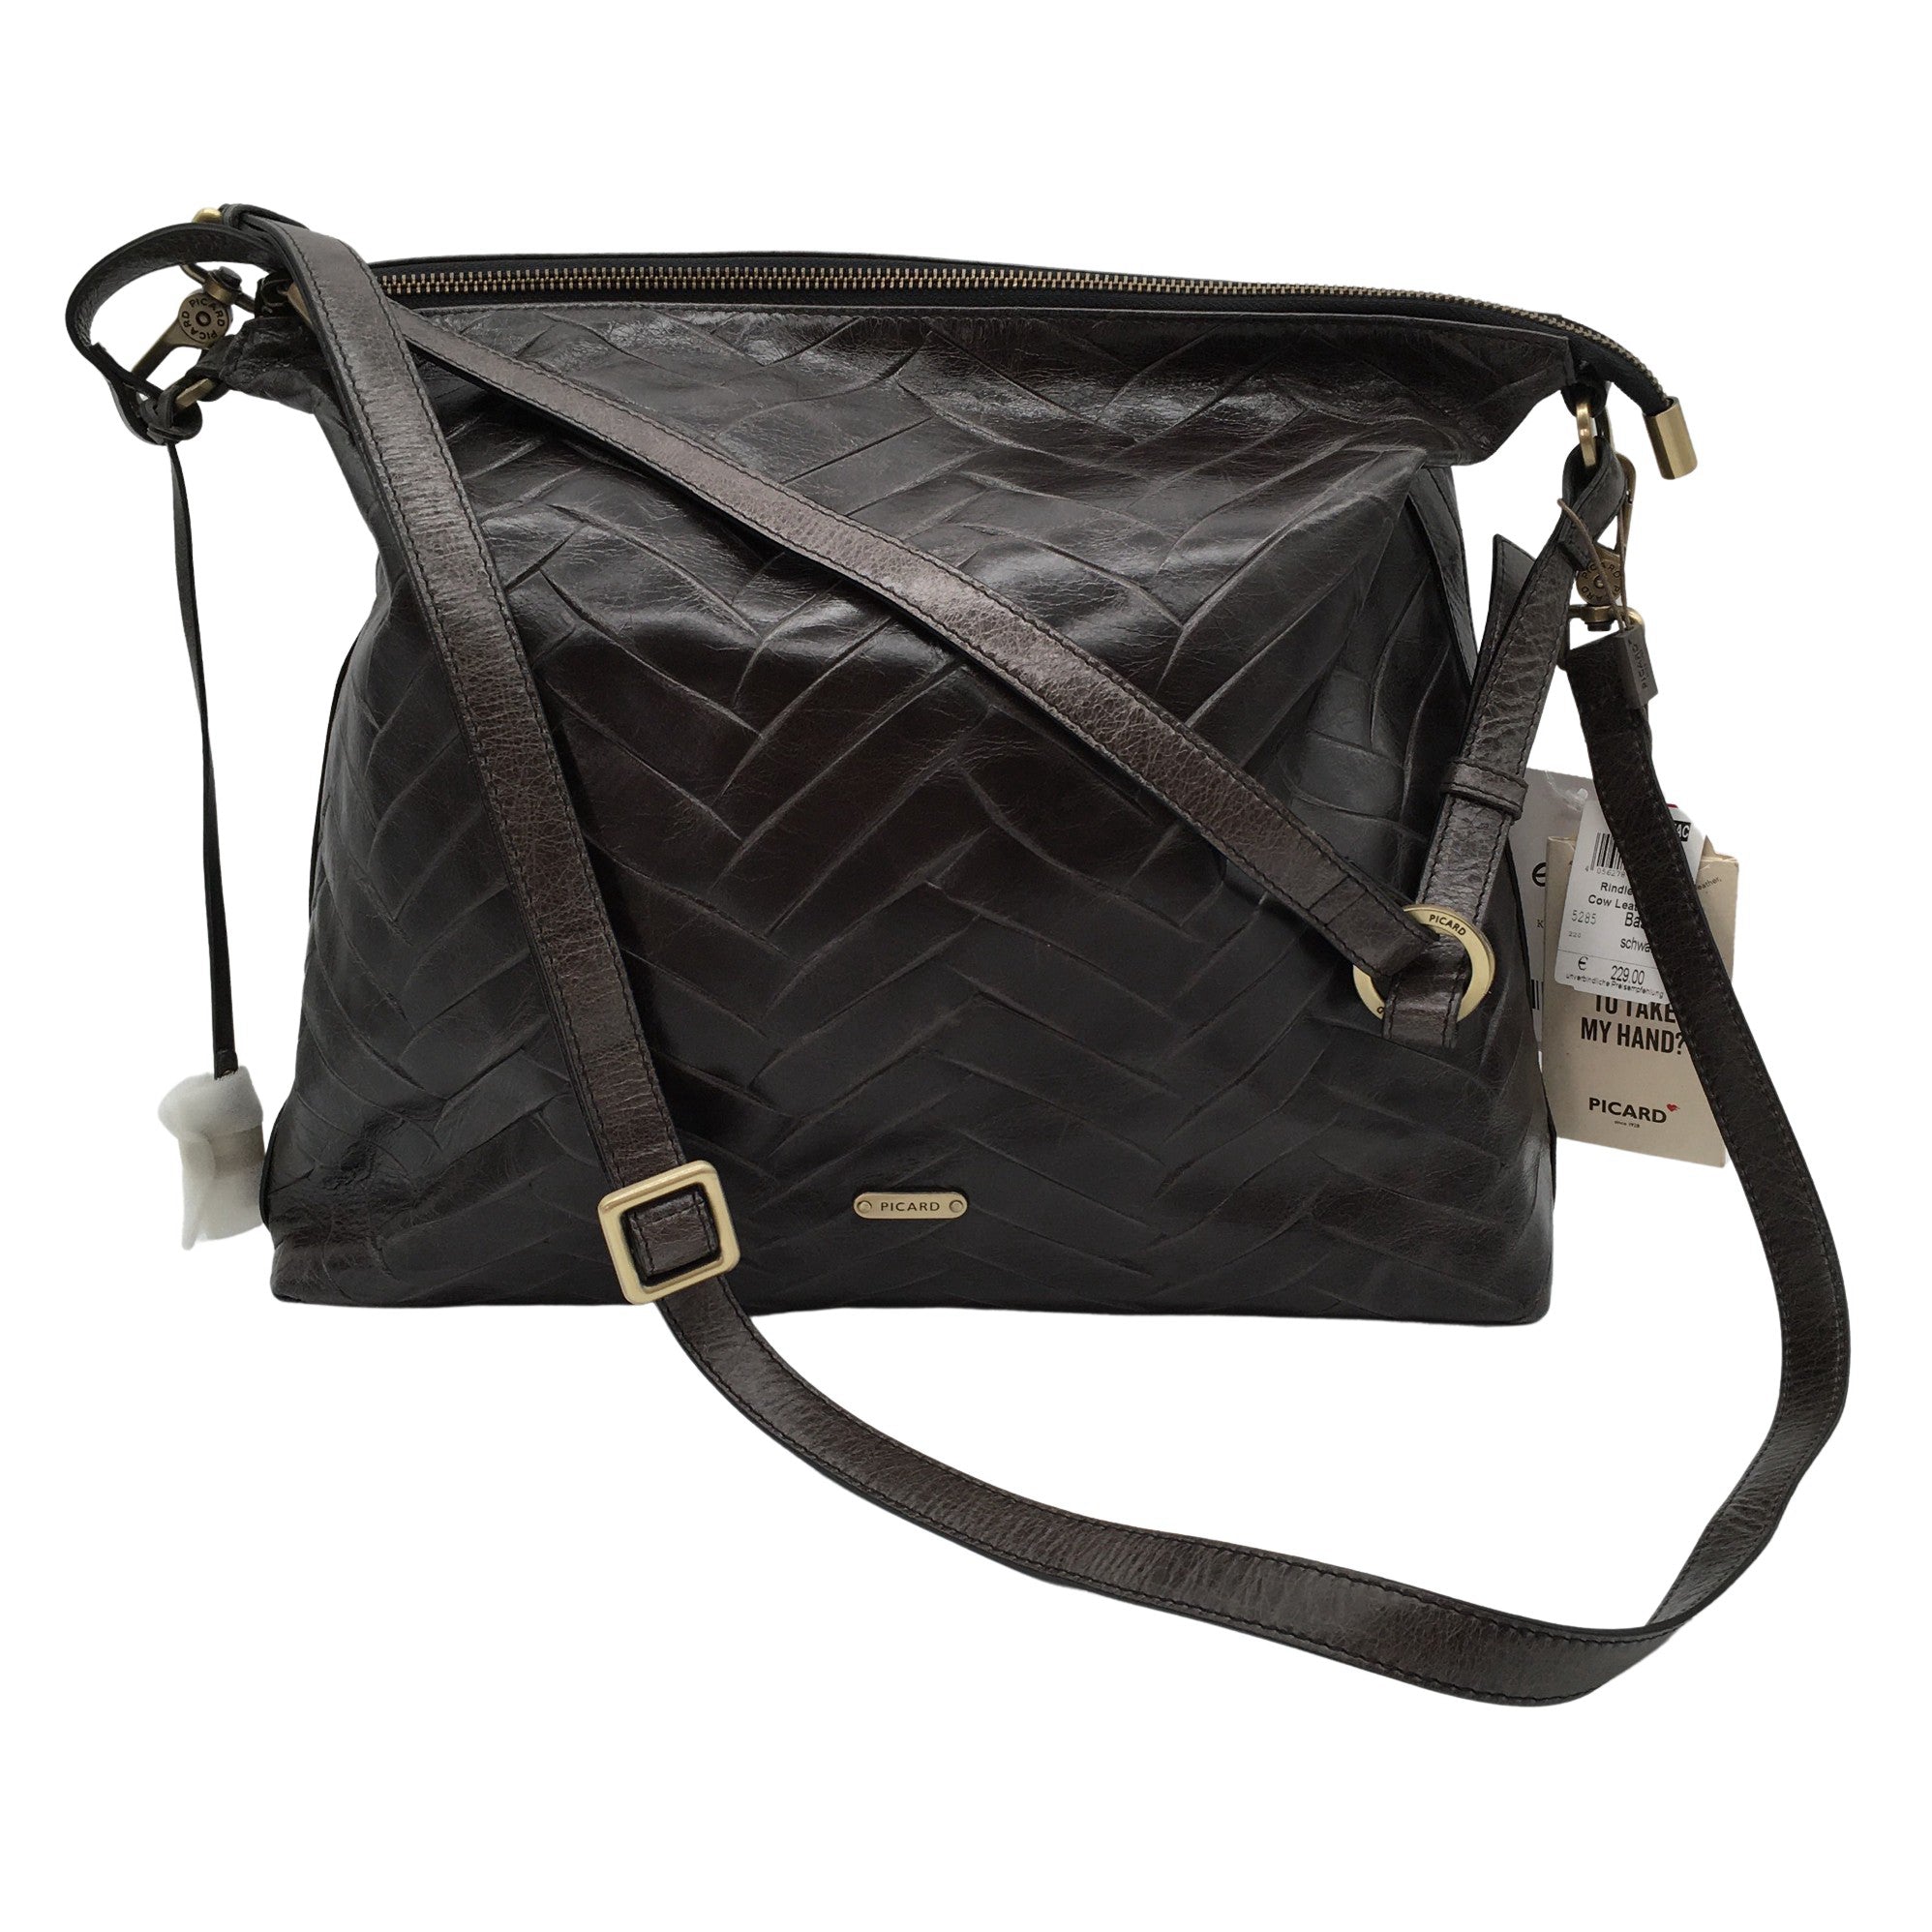 Women's Picard Handbag, size Maxi (Brown)